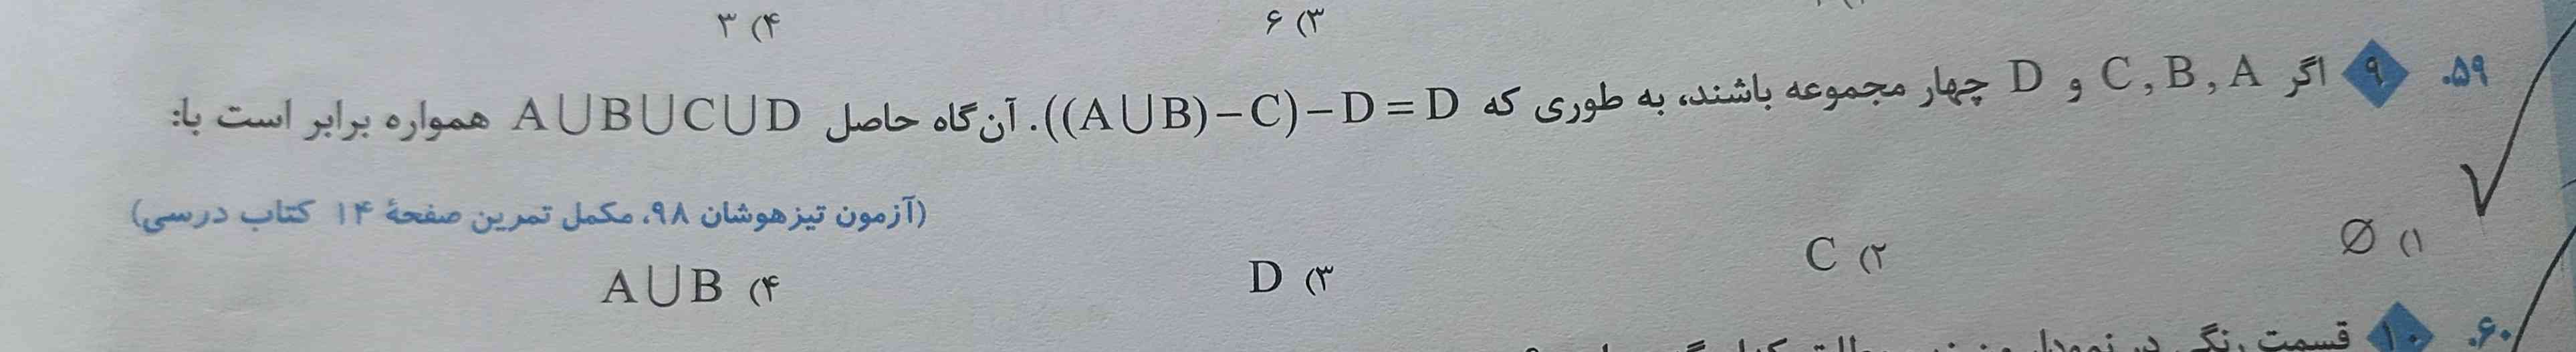 اگر A, B, C, D چهار مجموعه باشند به طوری که 
((AUB)-C)-D = D
آن گاه حاصل AUBUCUD چیست؟
هرکی زودتر بگه تاج میدم با دلیل